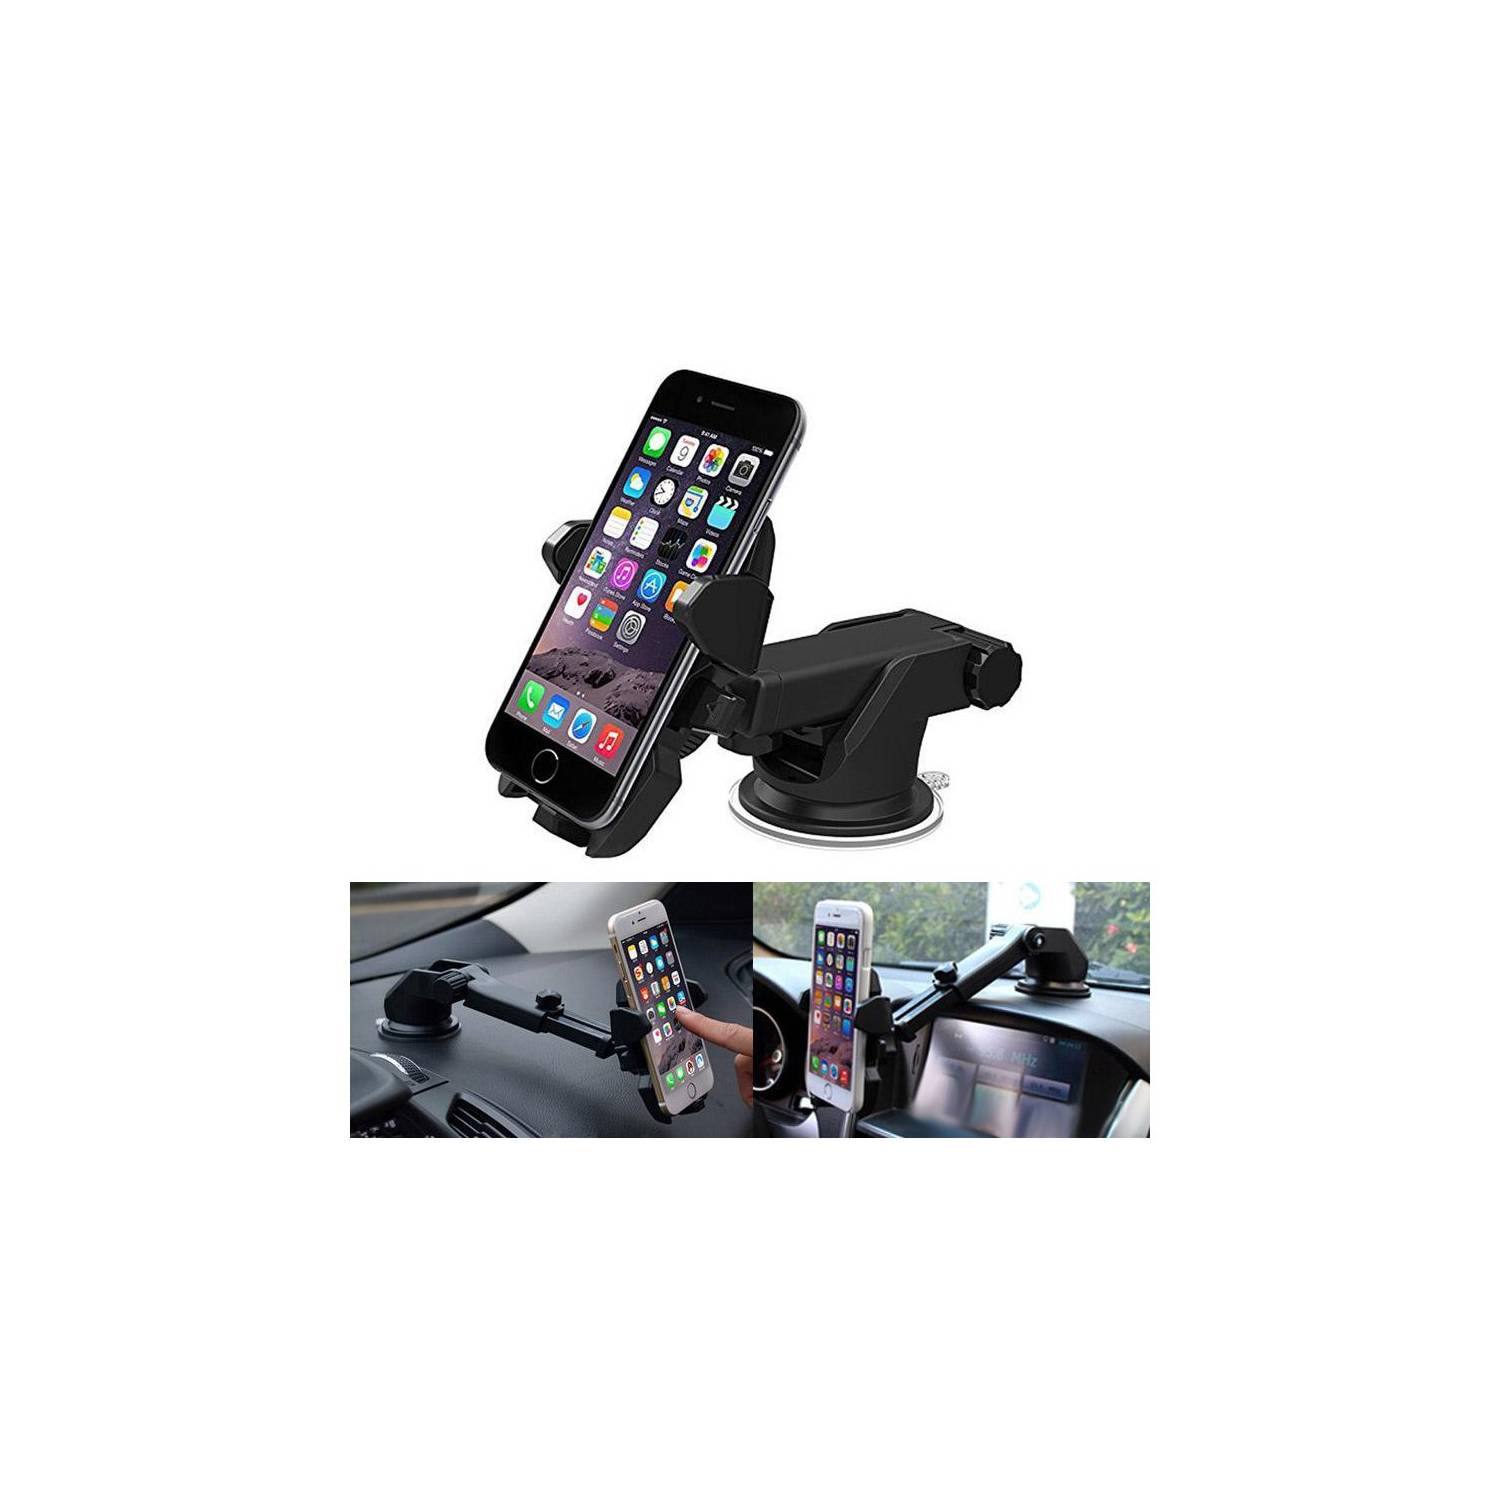 OEM Soporte Telefono Porta Celular Auto Automóvil Brazo Largo Smartphone